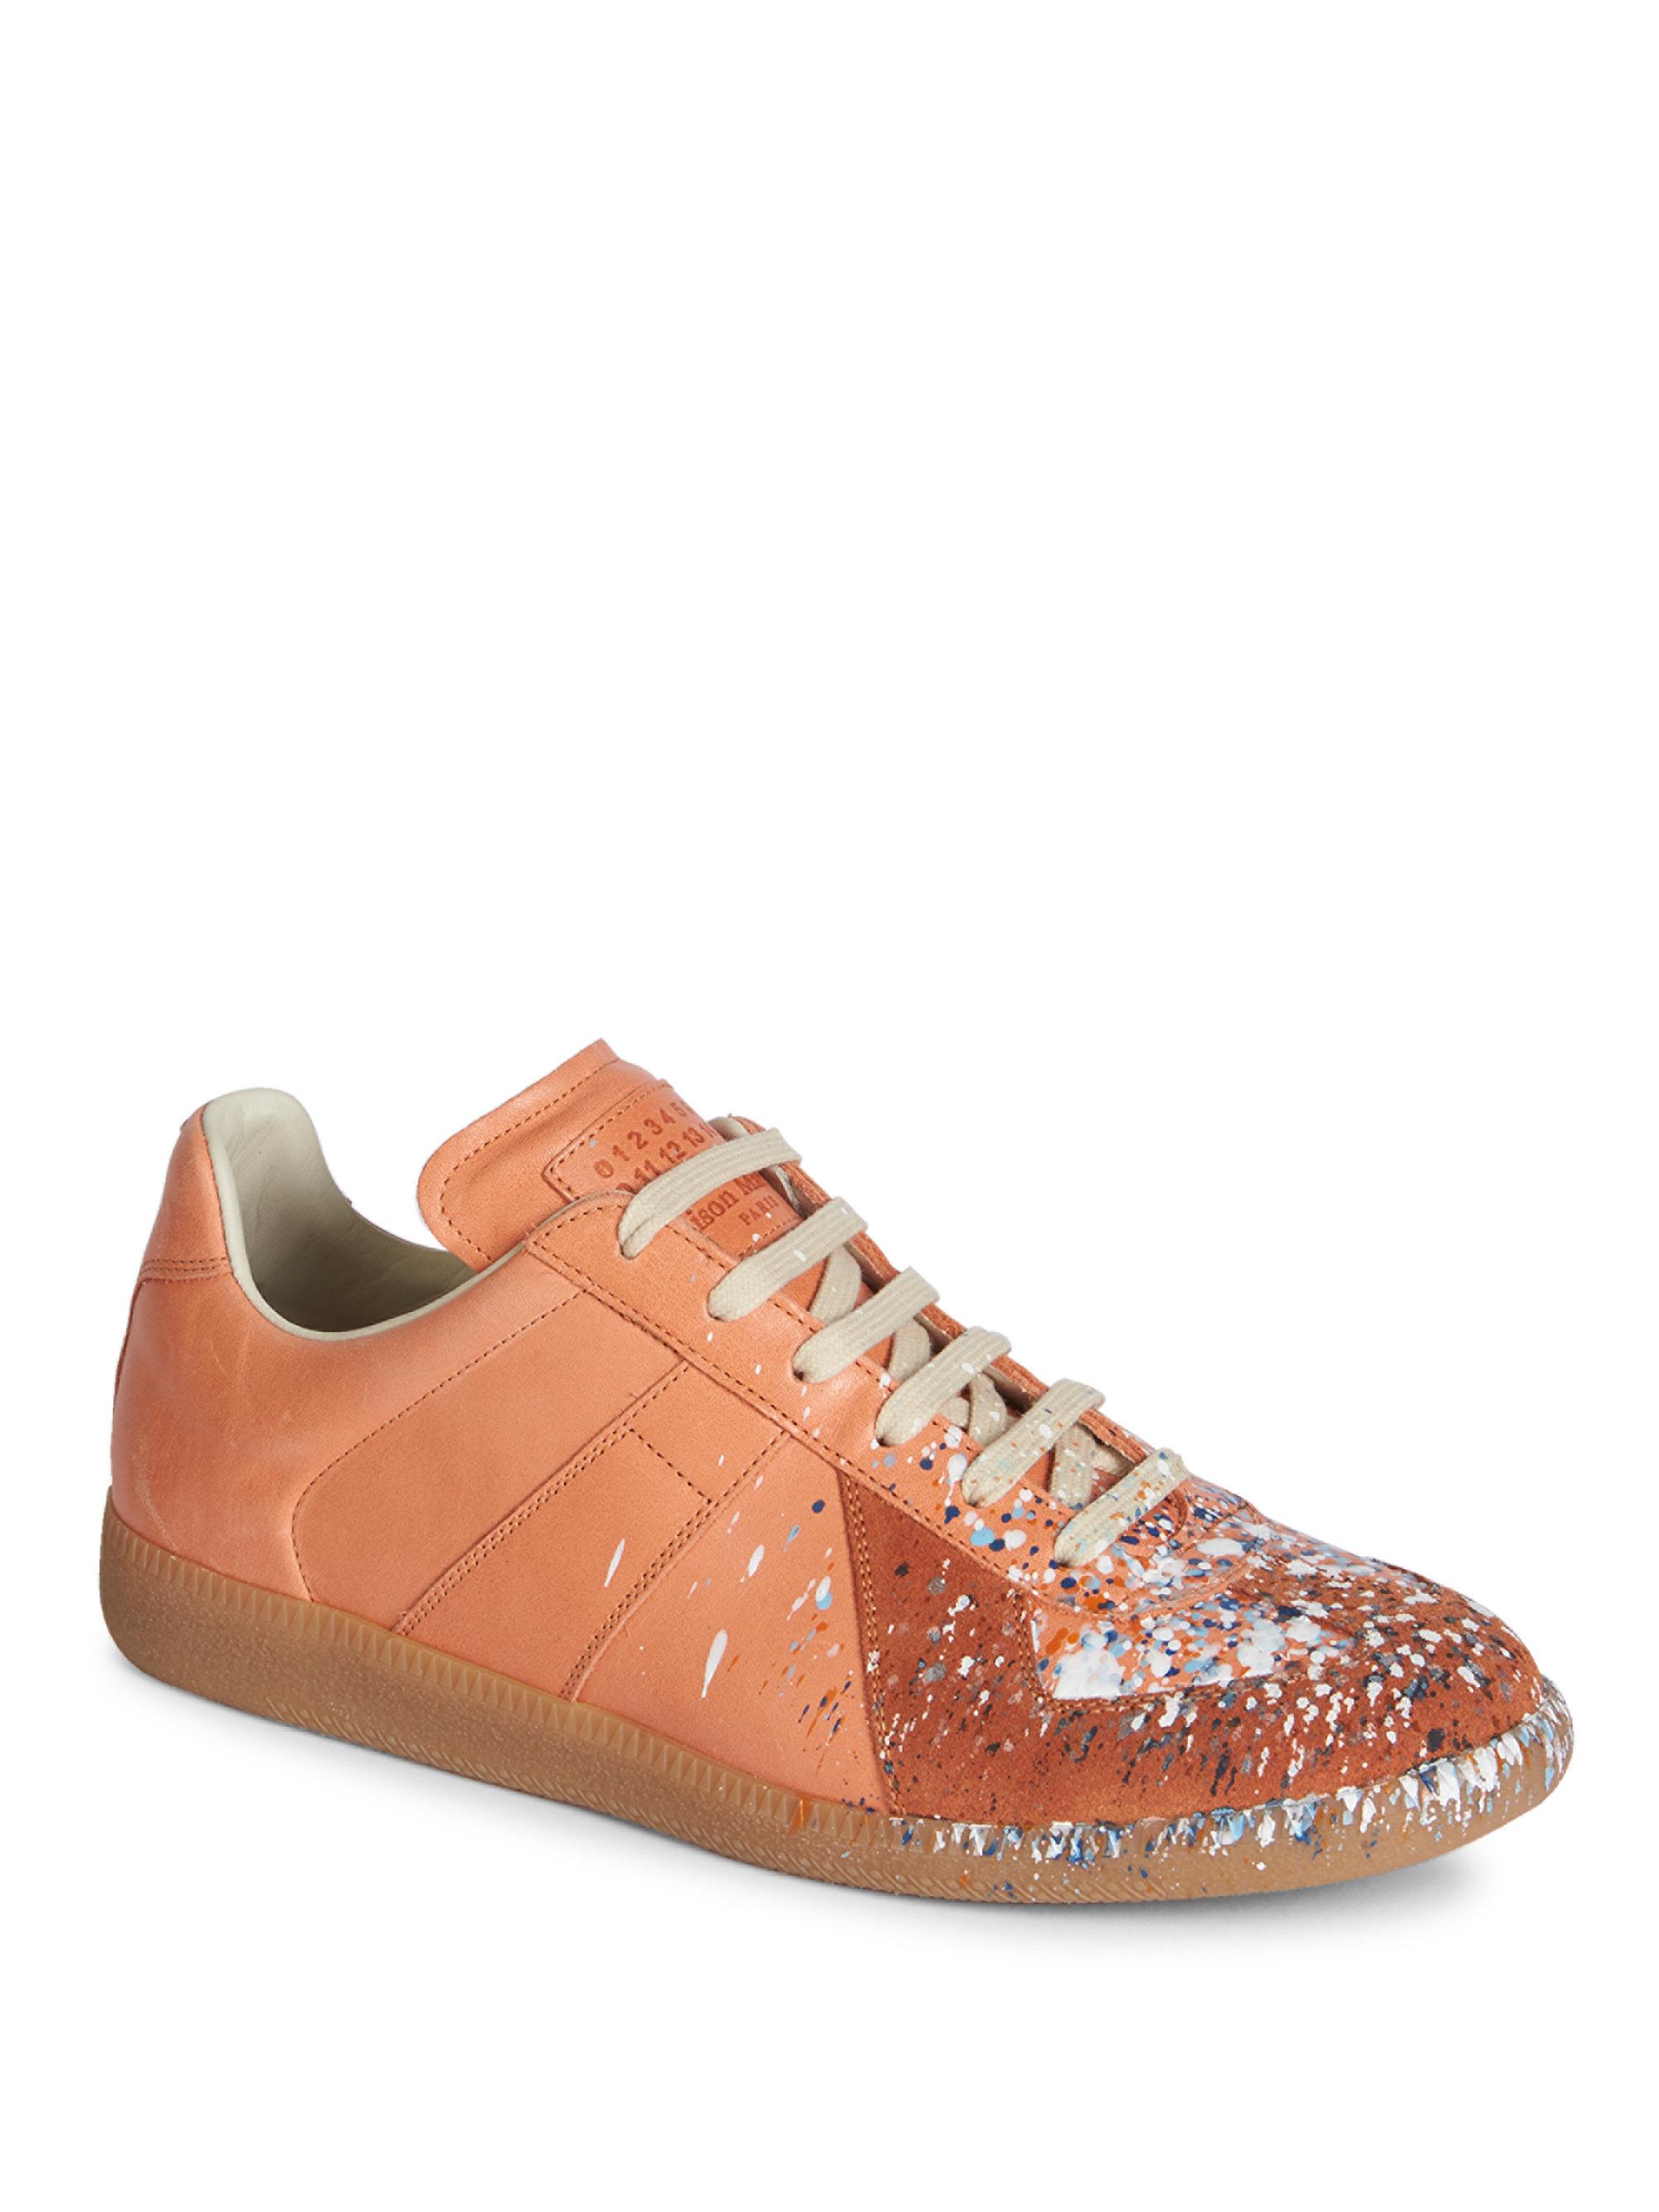 Maison Margiela Suede Replica Splatter Paint Sneakers in Orange for Men -  Lyst